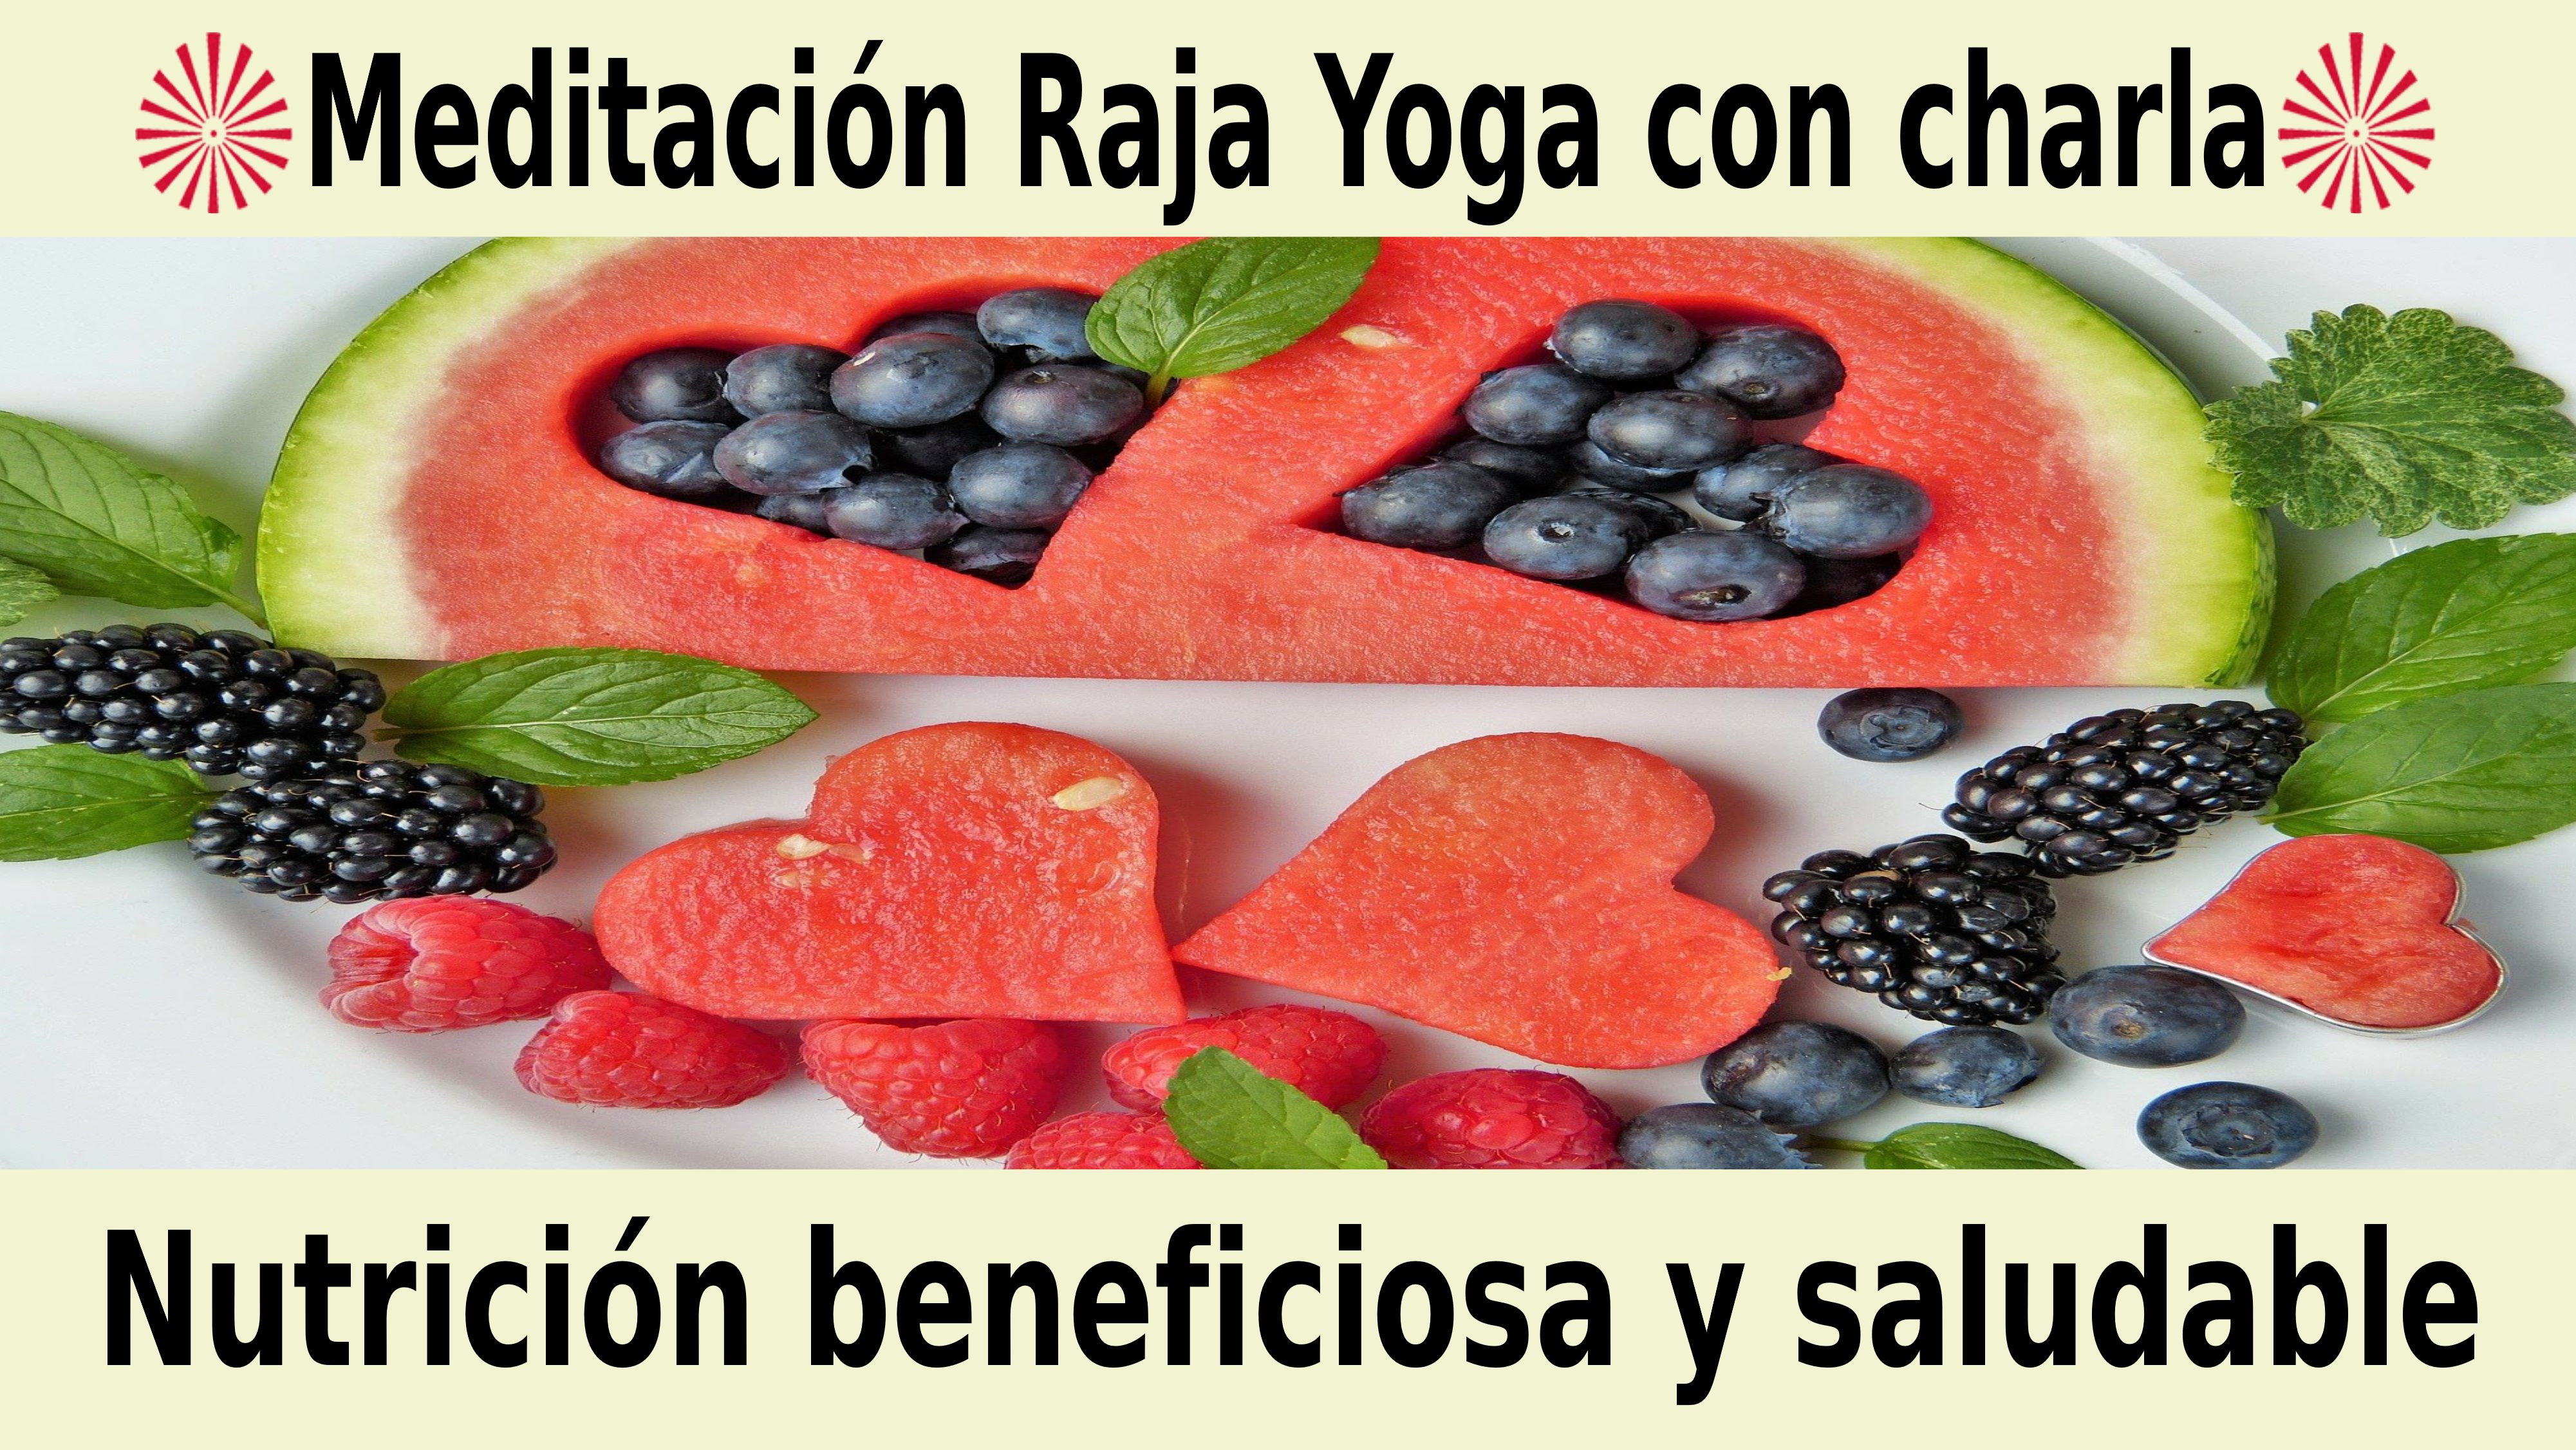 Meditación Raja Yoga:  Nutrición beneficiosa y saludable (26 Noviembre 2020) On-line desde Barcelona